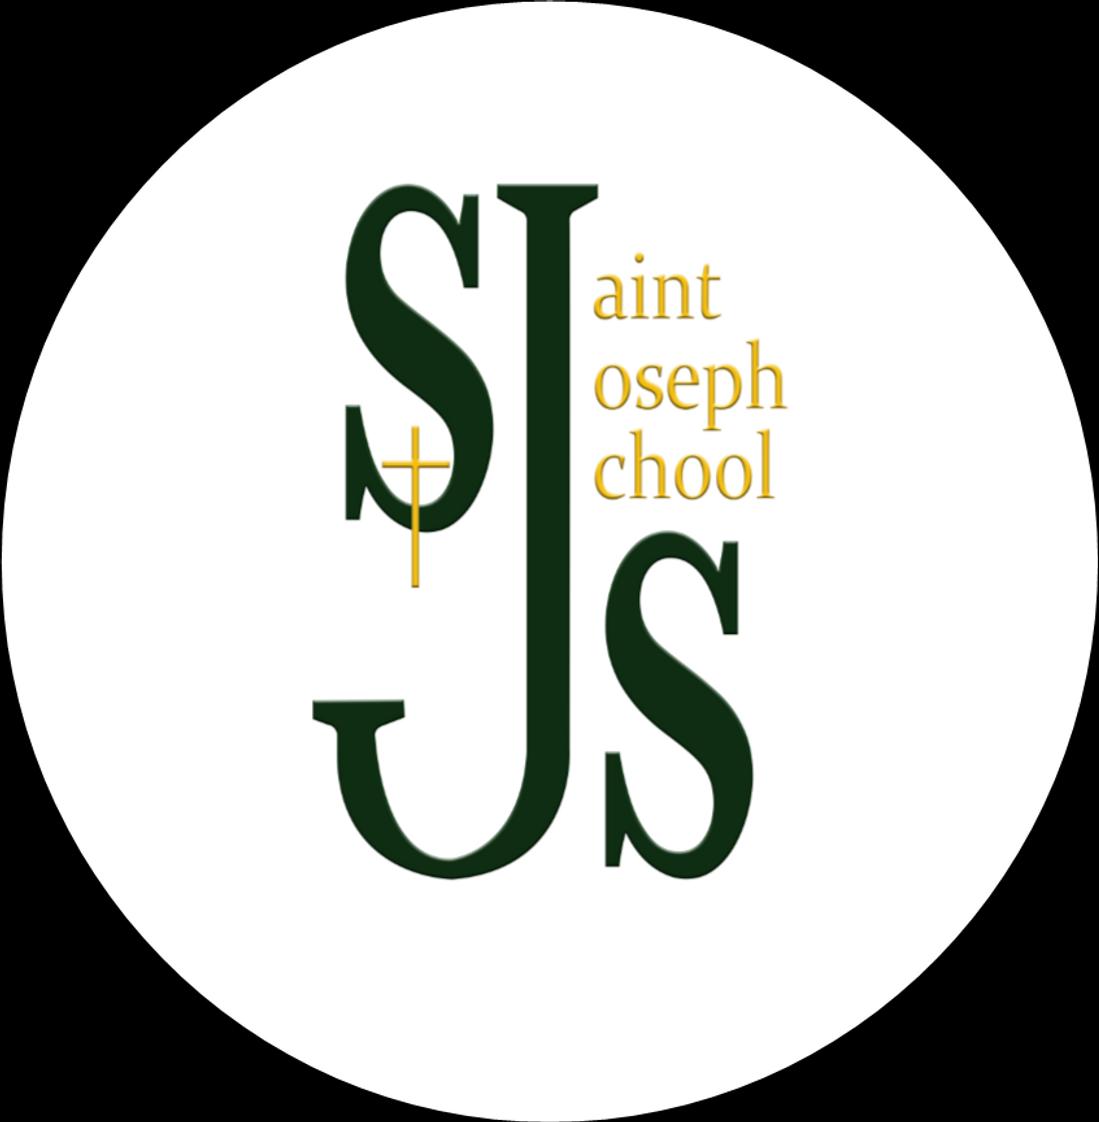 St Joseph Convent School – St Joseph Convent School